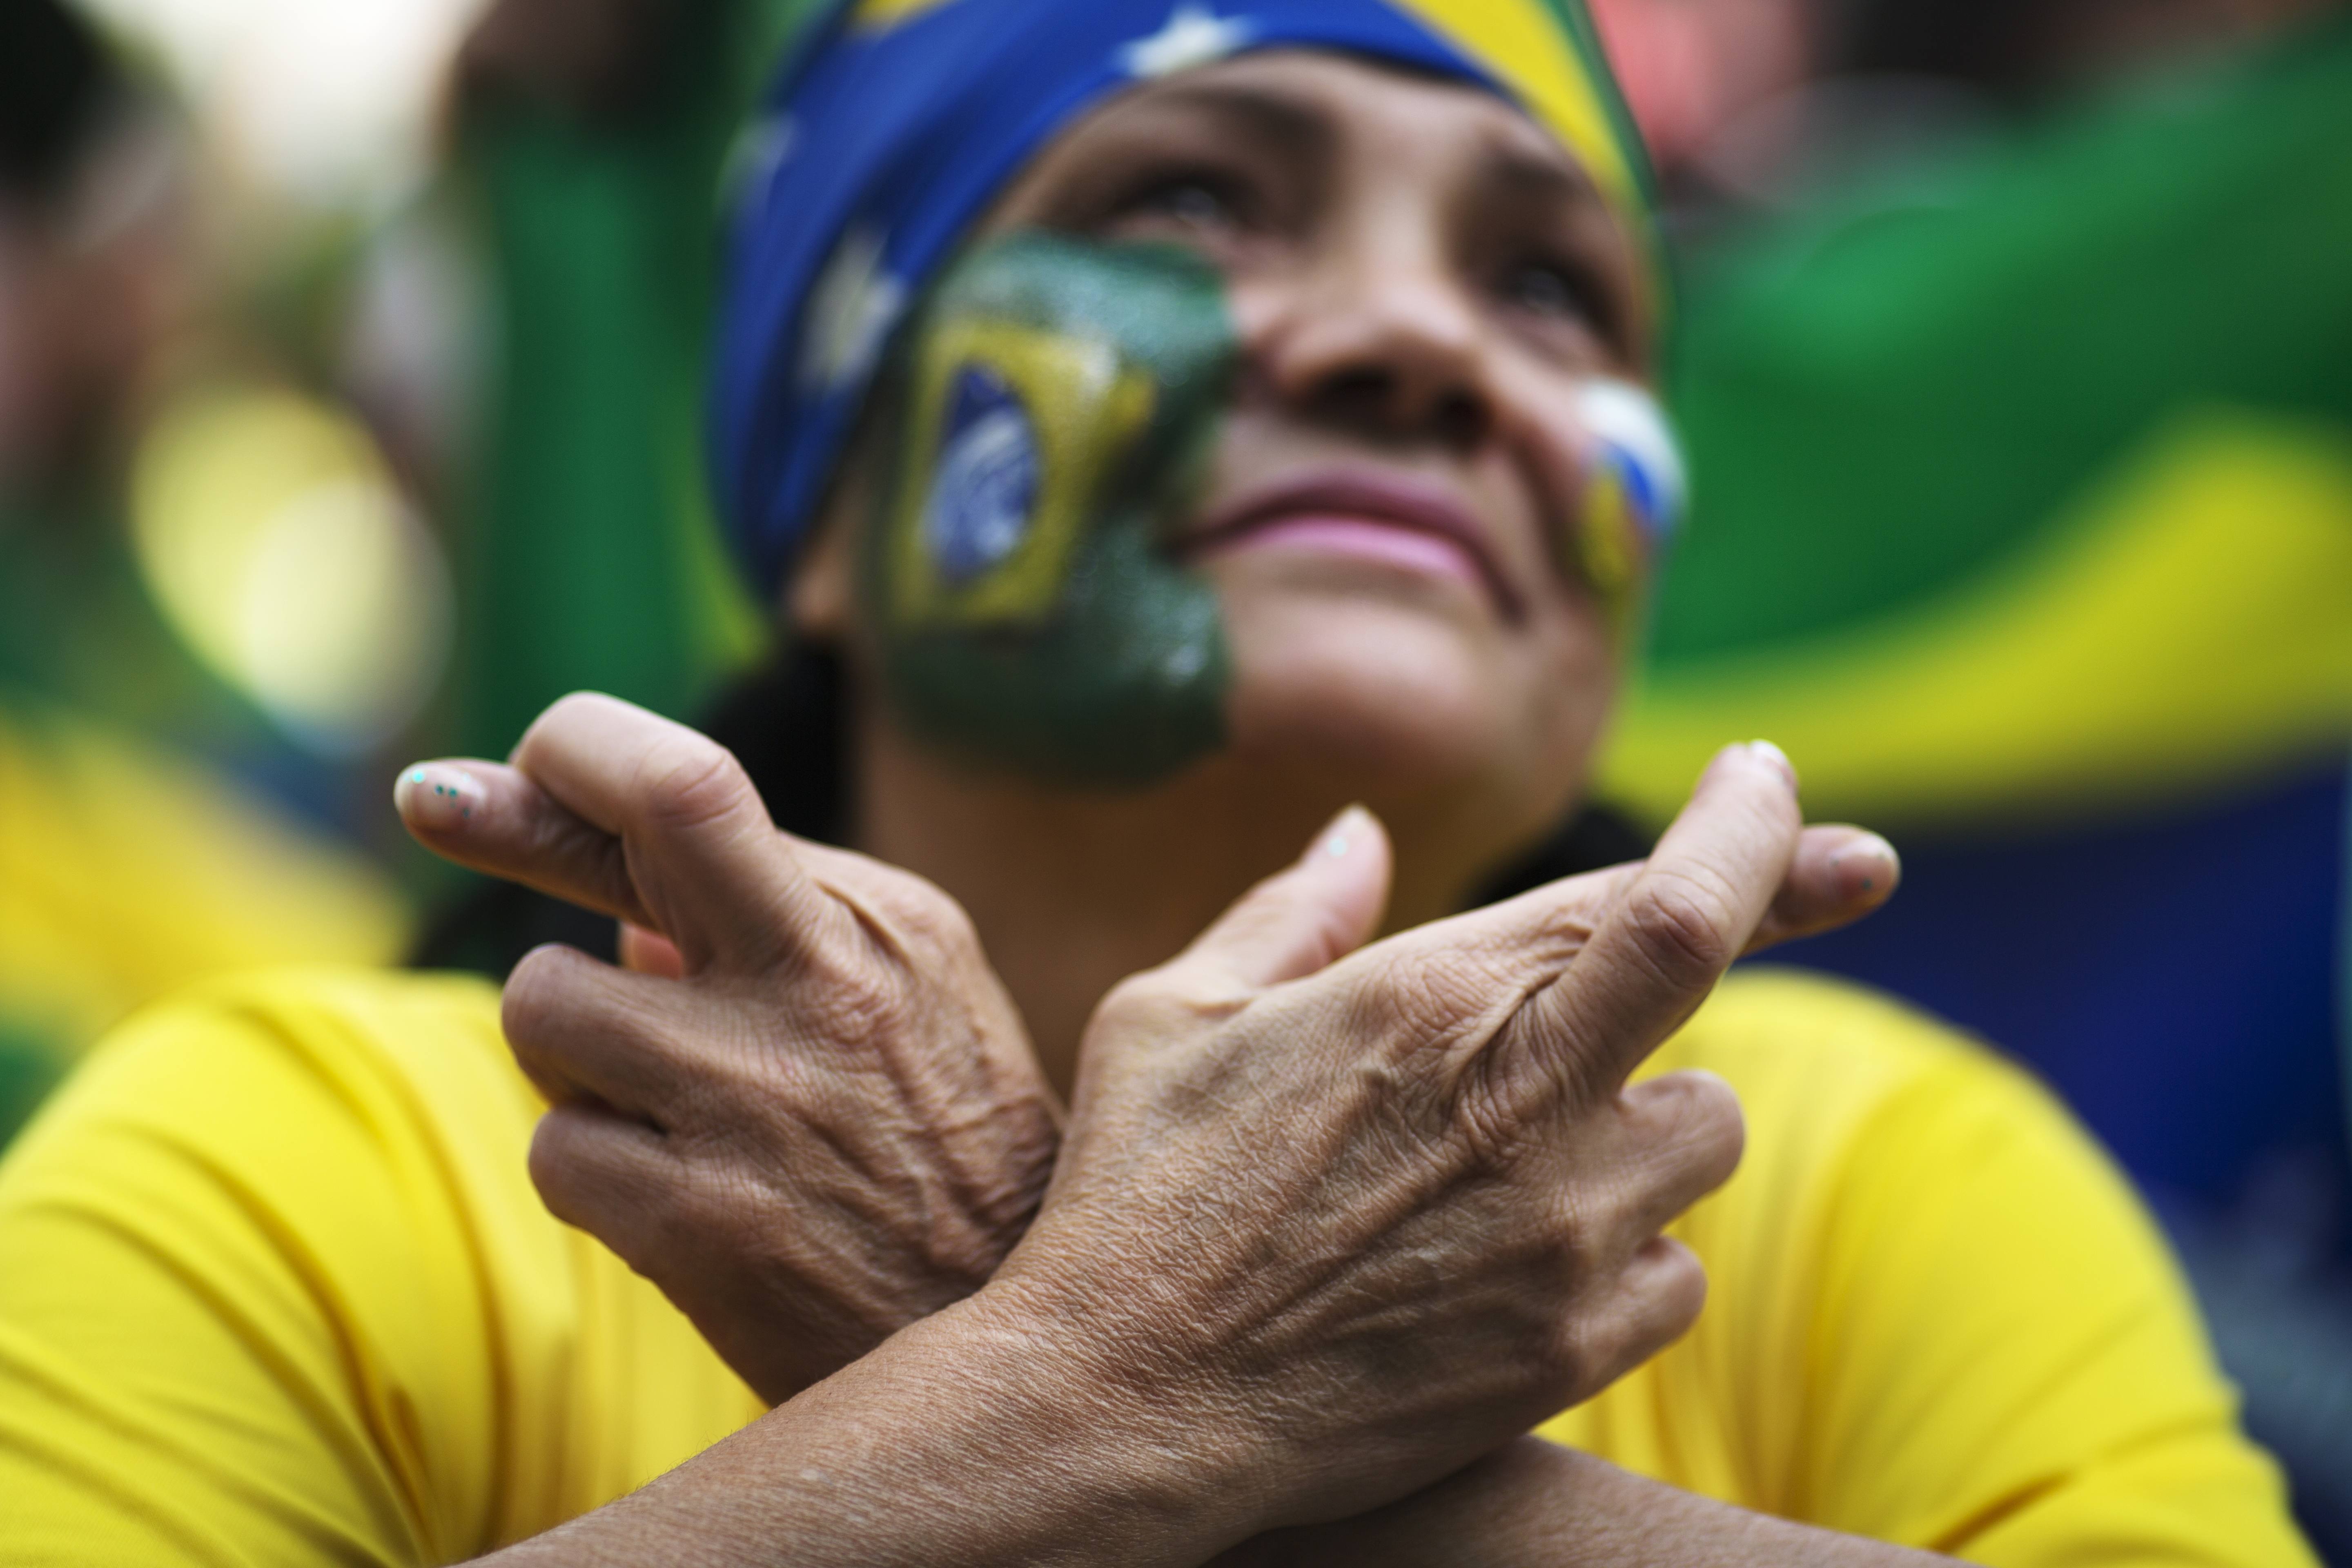 Μουντιάλ 2014: Βραζιλία-Χιλή (1-1 παράταση, 3-2 στα πέναλτι) και Κολομβία-Ουρουγουάη (2-0)